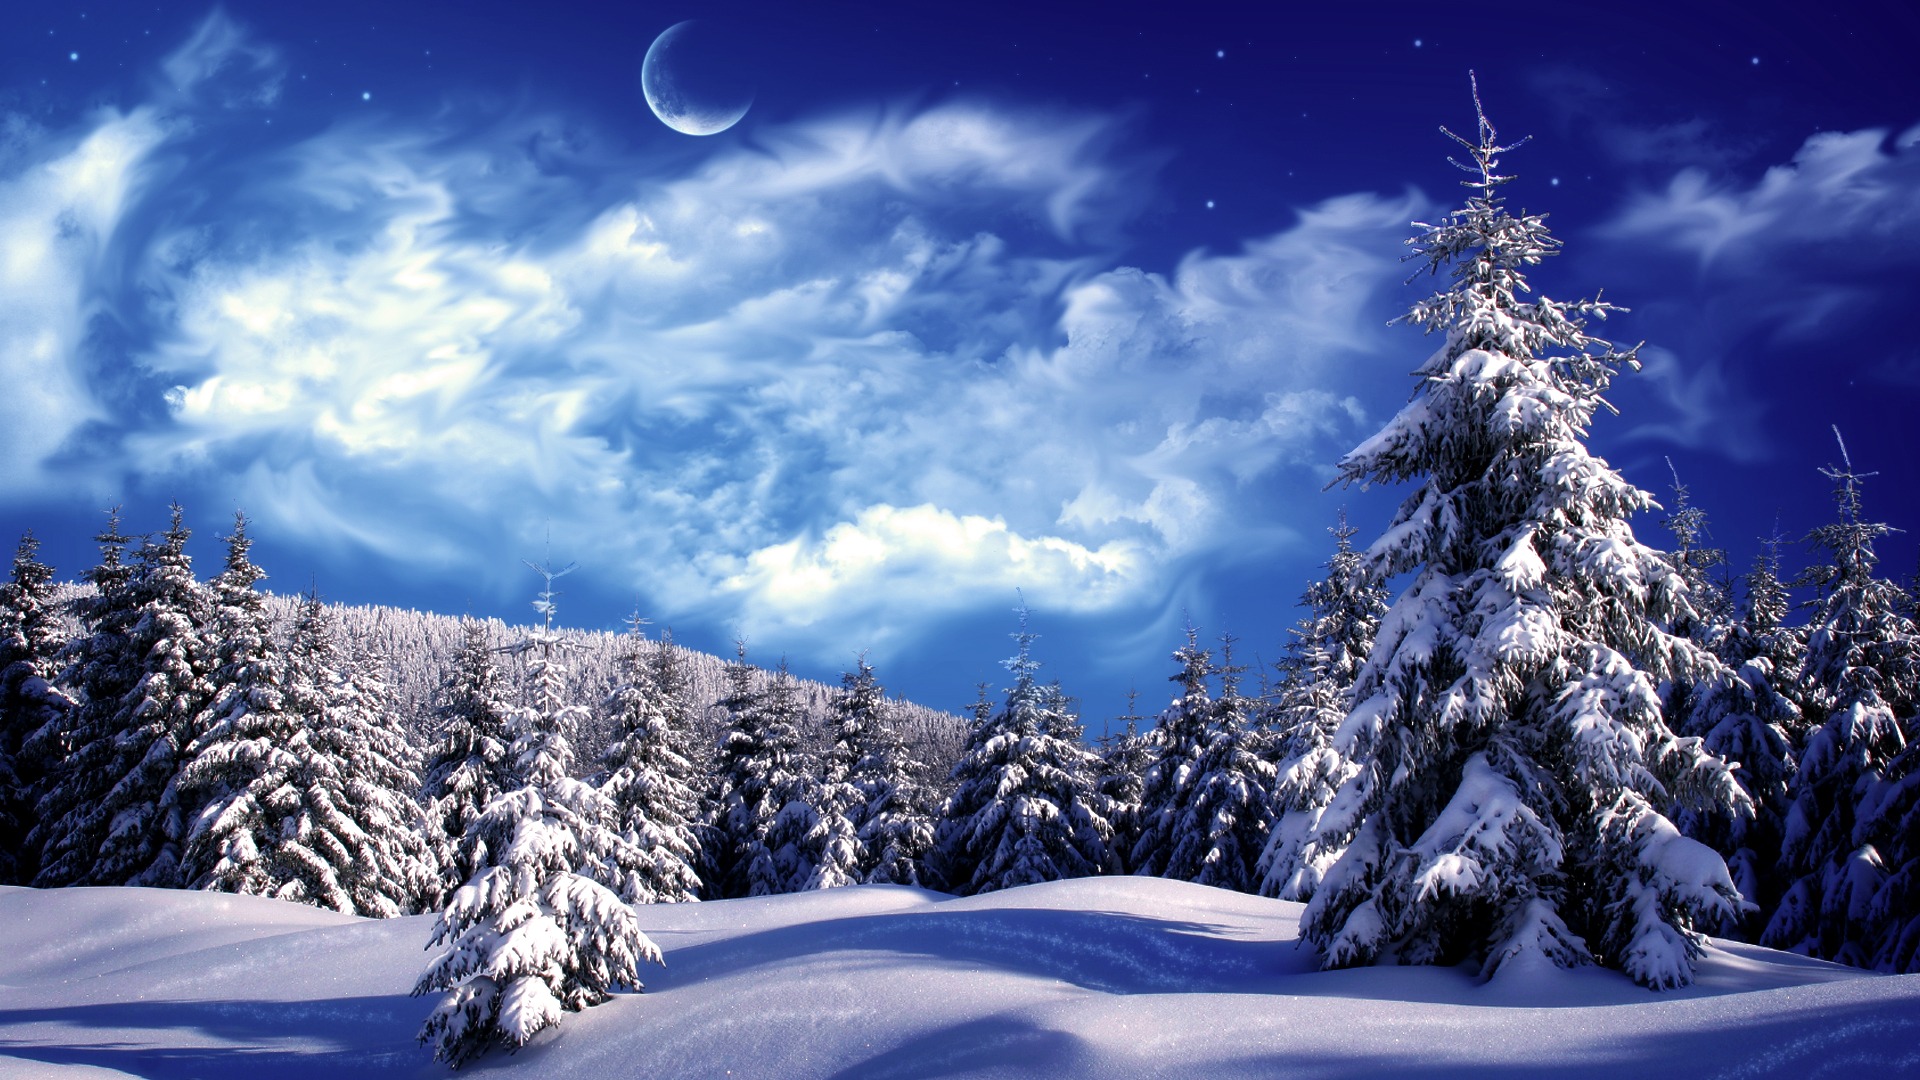 Blue Mountains Winter Wonderland 11111 Wallpaper Wallpaper hd